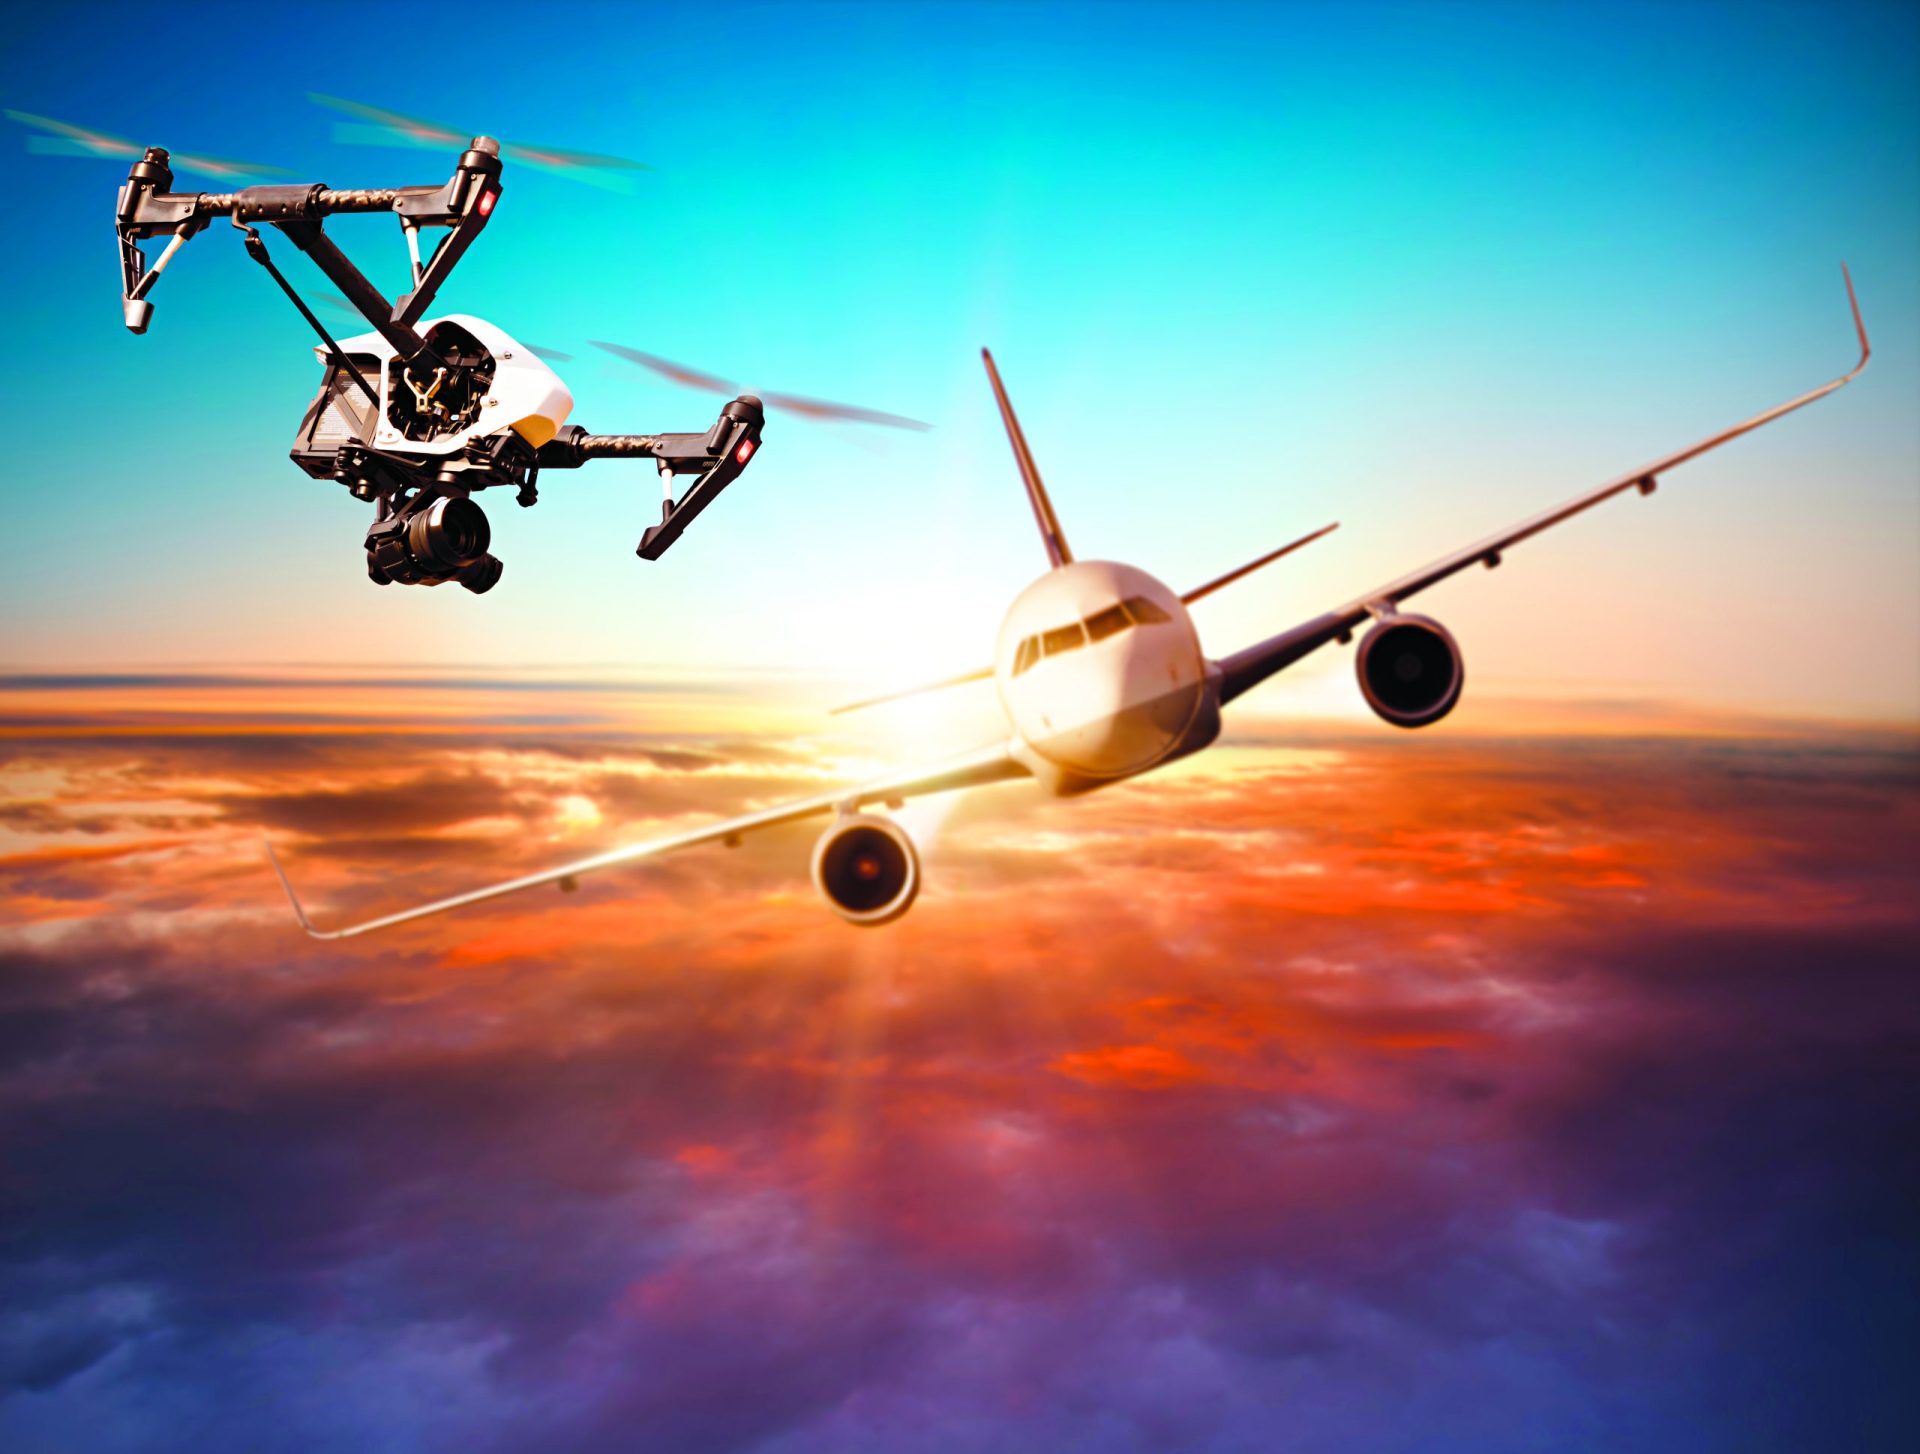 Drones. “Operadores devem ter formação e estar registados”, diz perito